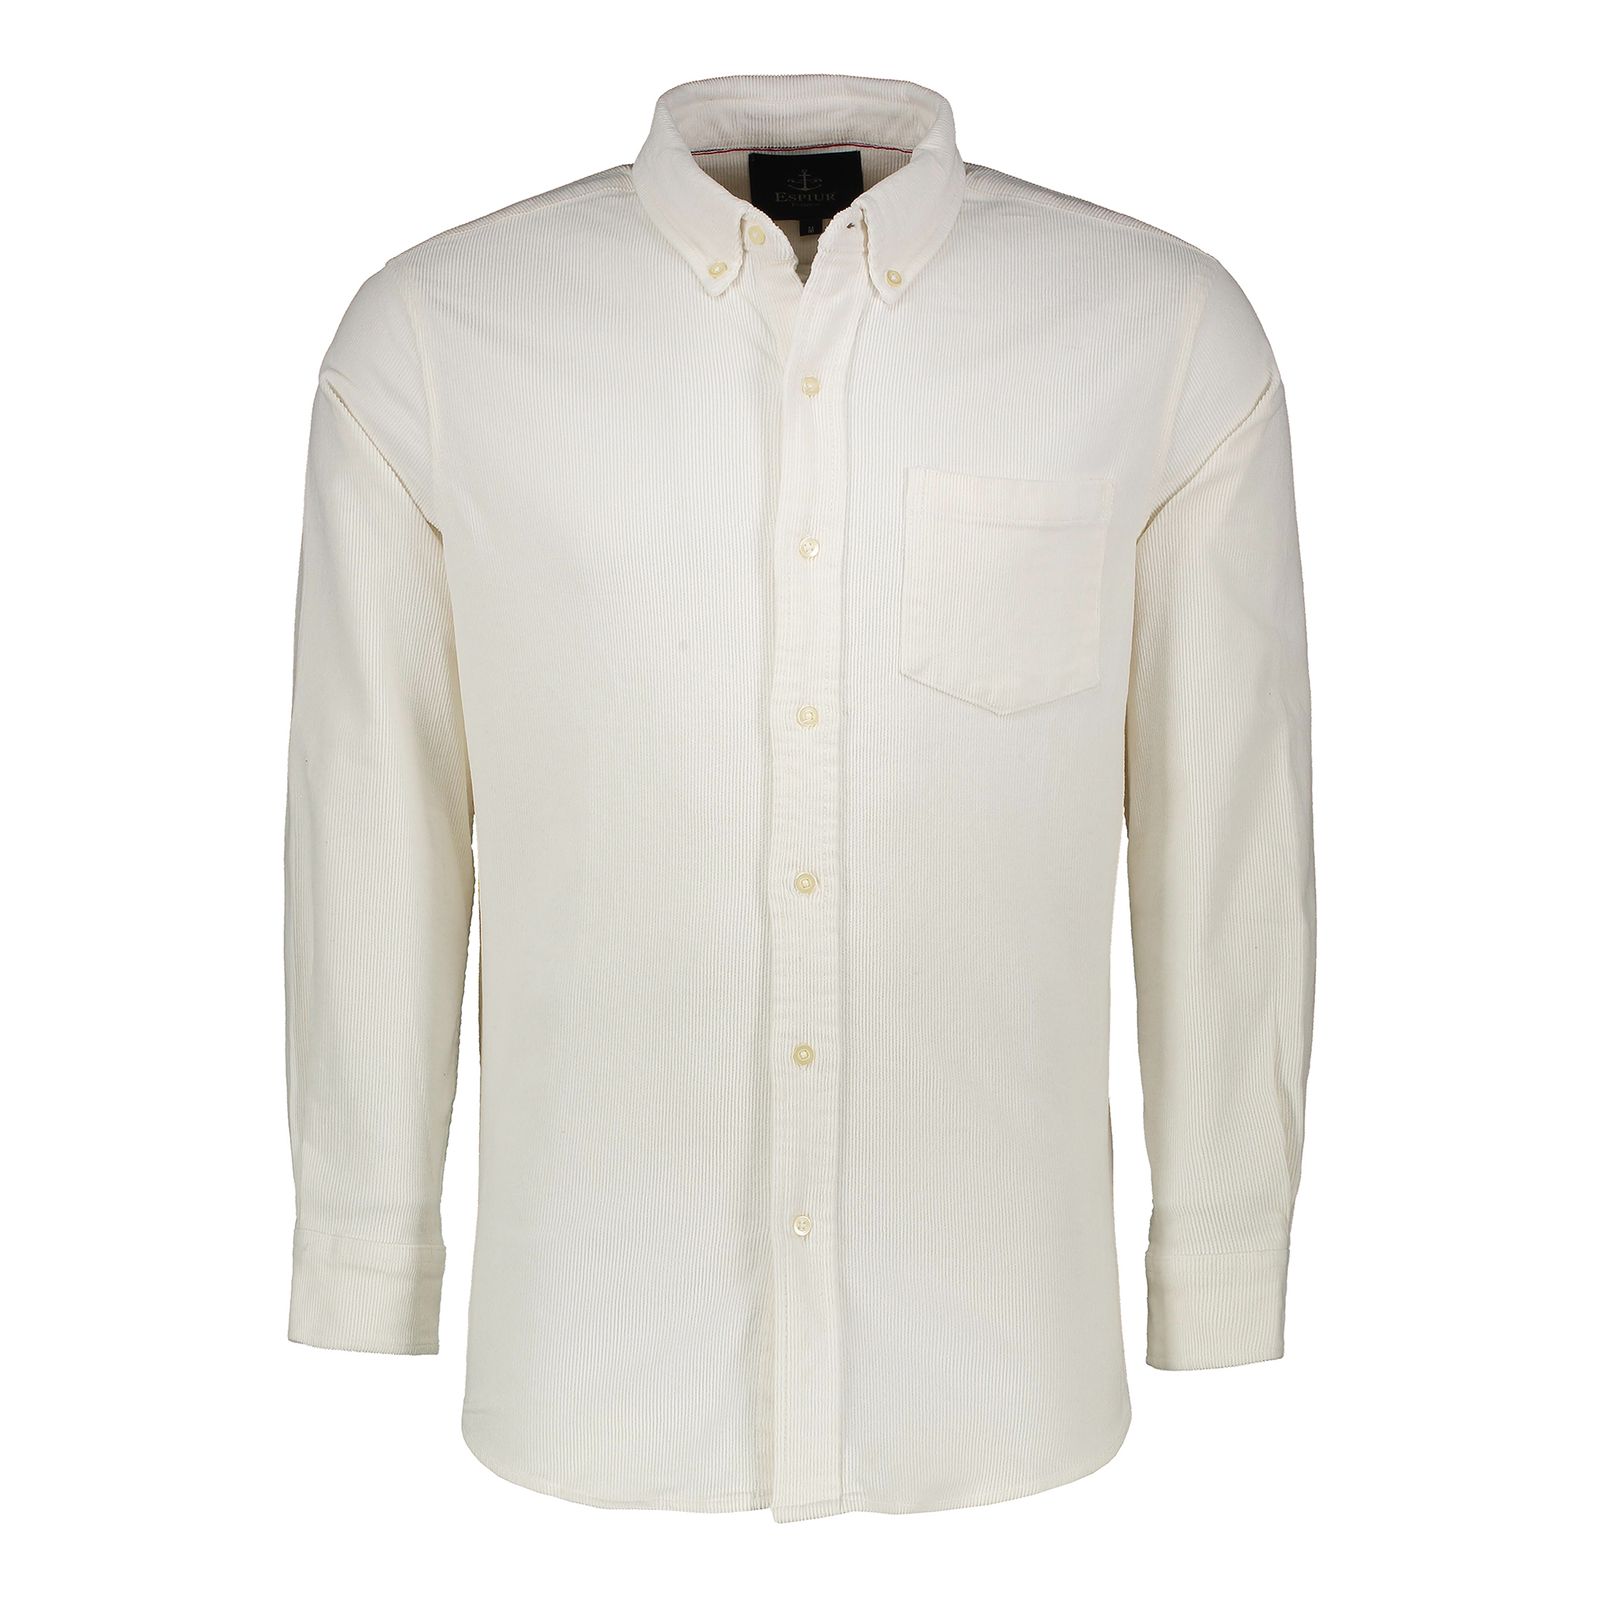 پیراهن آستین بلند مردانه اسپیور مدل AMA32-44 رنگ سفید -  - 1